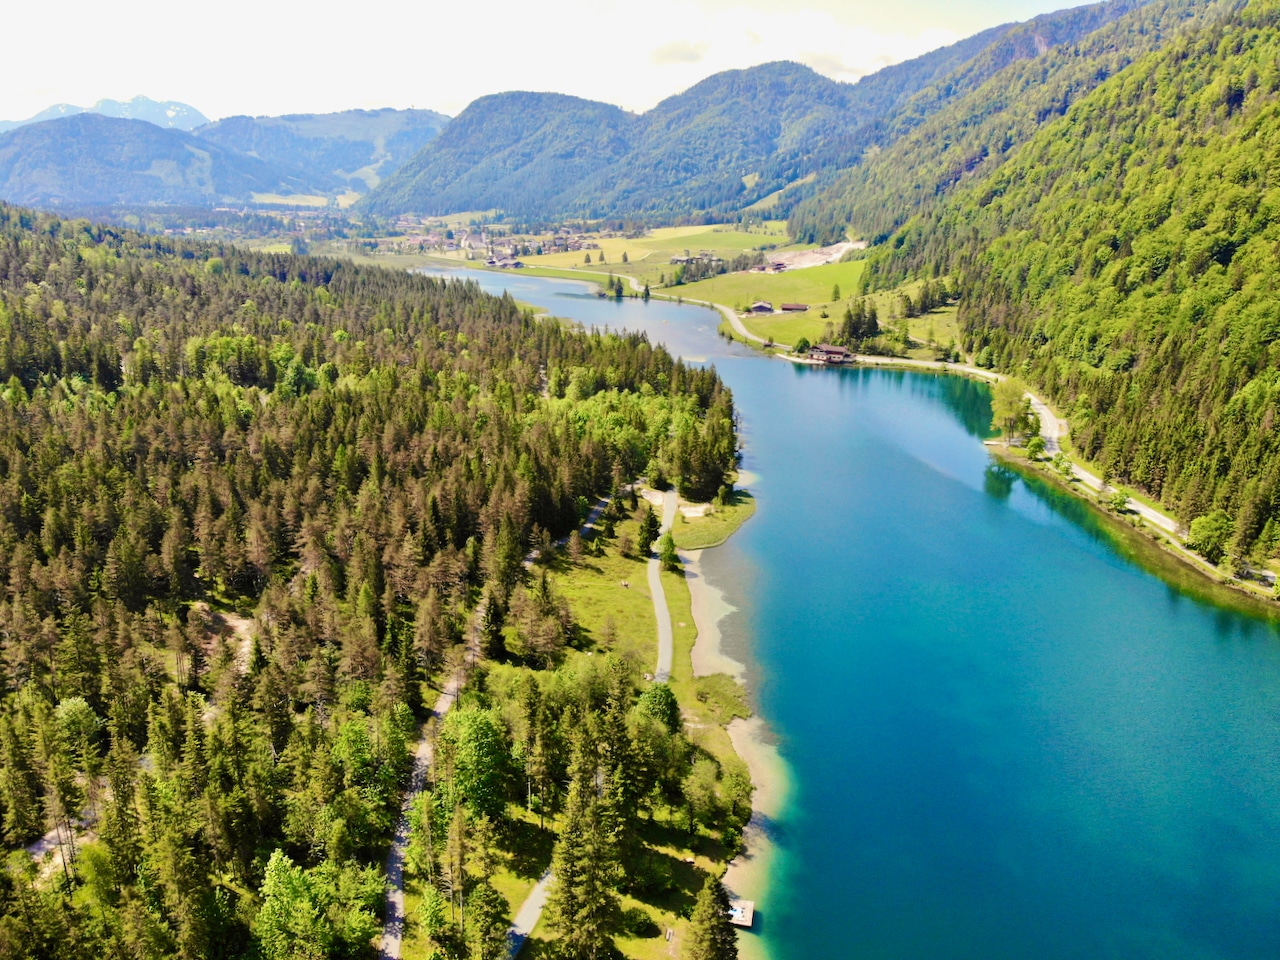 El lago de montaña de aproximadamente 24 hectáreas, que se encuentra en el encantador Pillerseetal cerca del municipio de St. Ulrich am Pillersee a una altitud de 835 metros, es una verdadera atracción para locales y visitantes por igual.